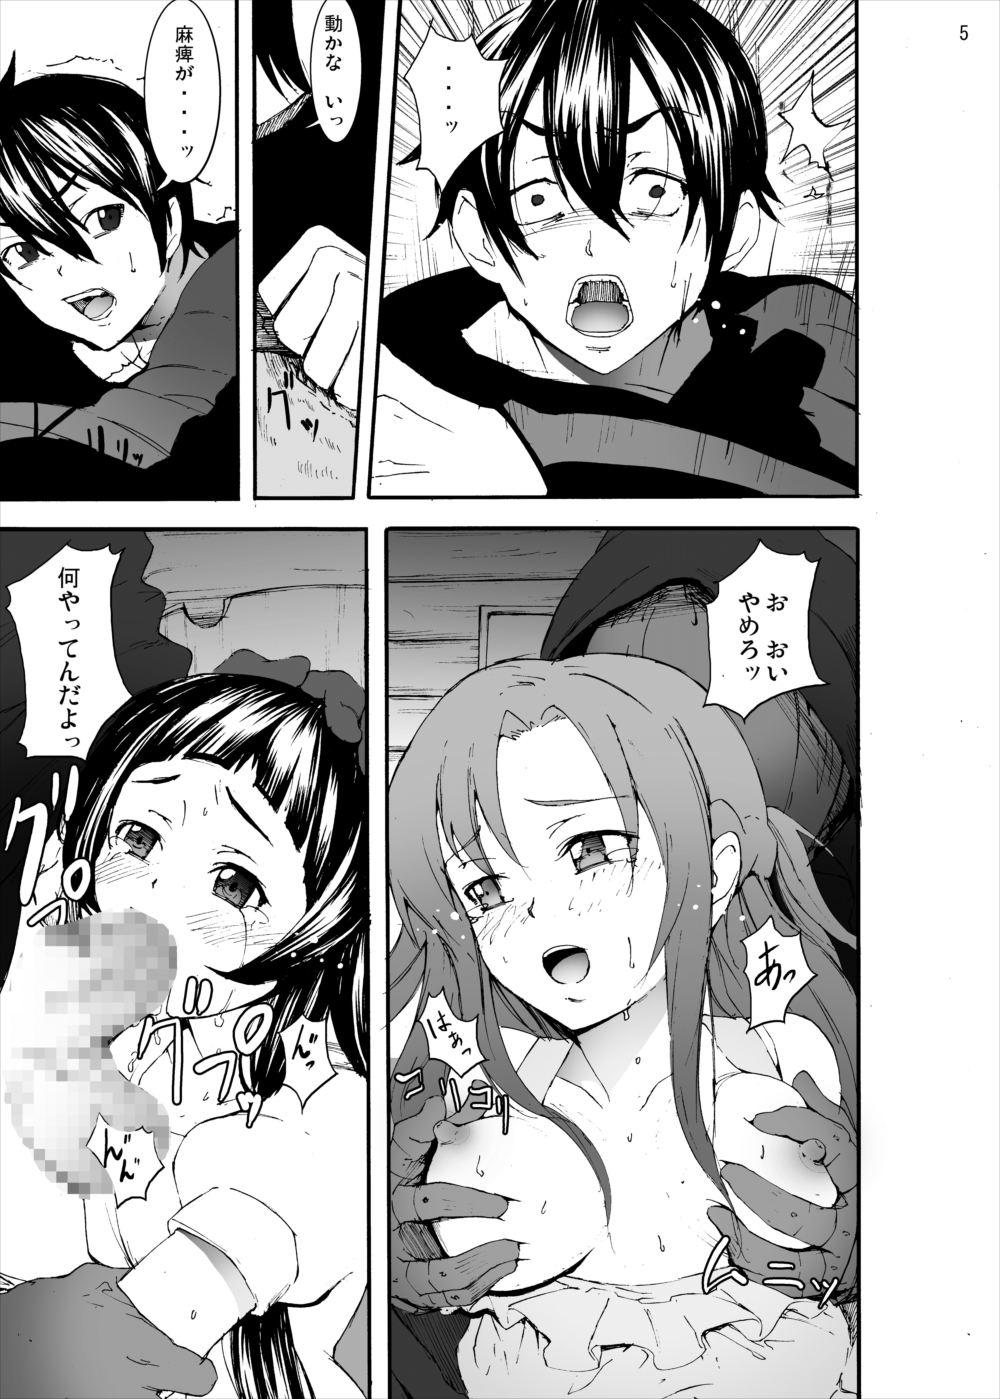  Asuna to Yui no Jigoku Rape... Ryoujoku Oyakodon Story - Sword art online Free Porn Hardcore - Page 4